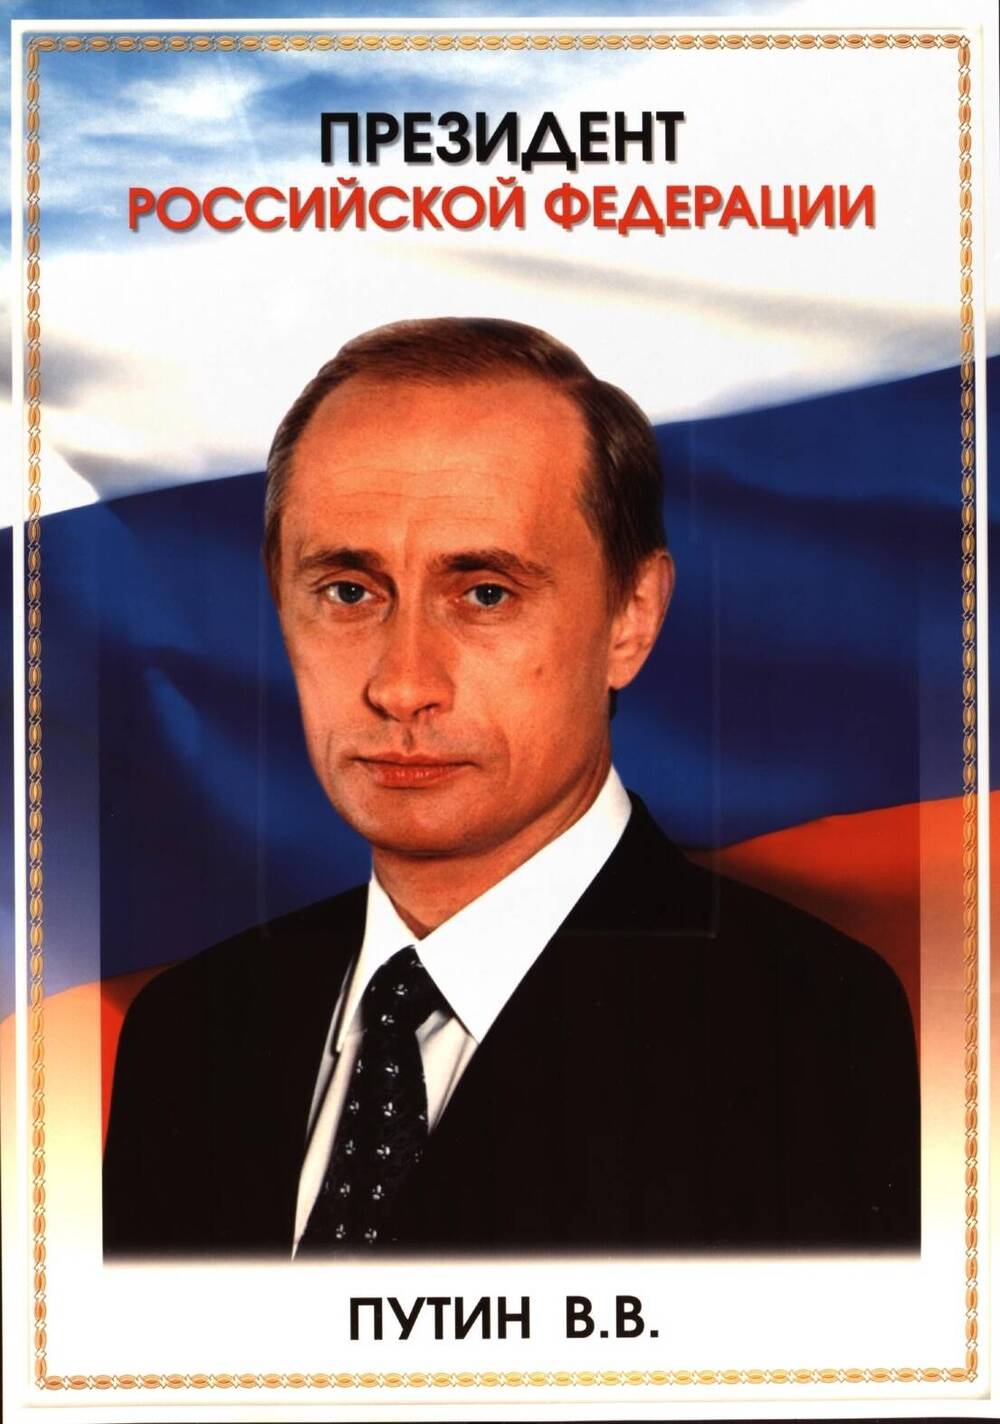 Плакат. «Президент Российской Федерации». Российская Федерация, 2003 г.